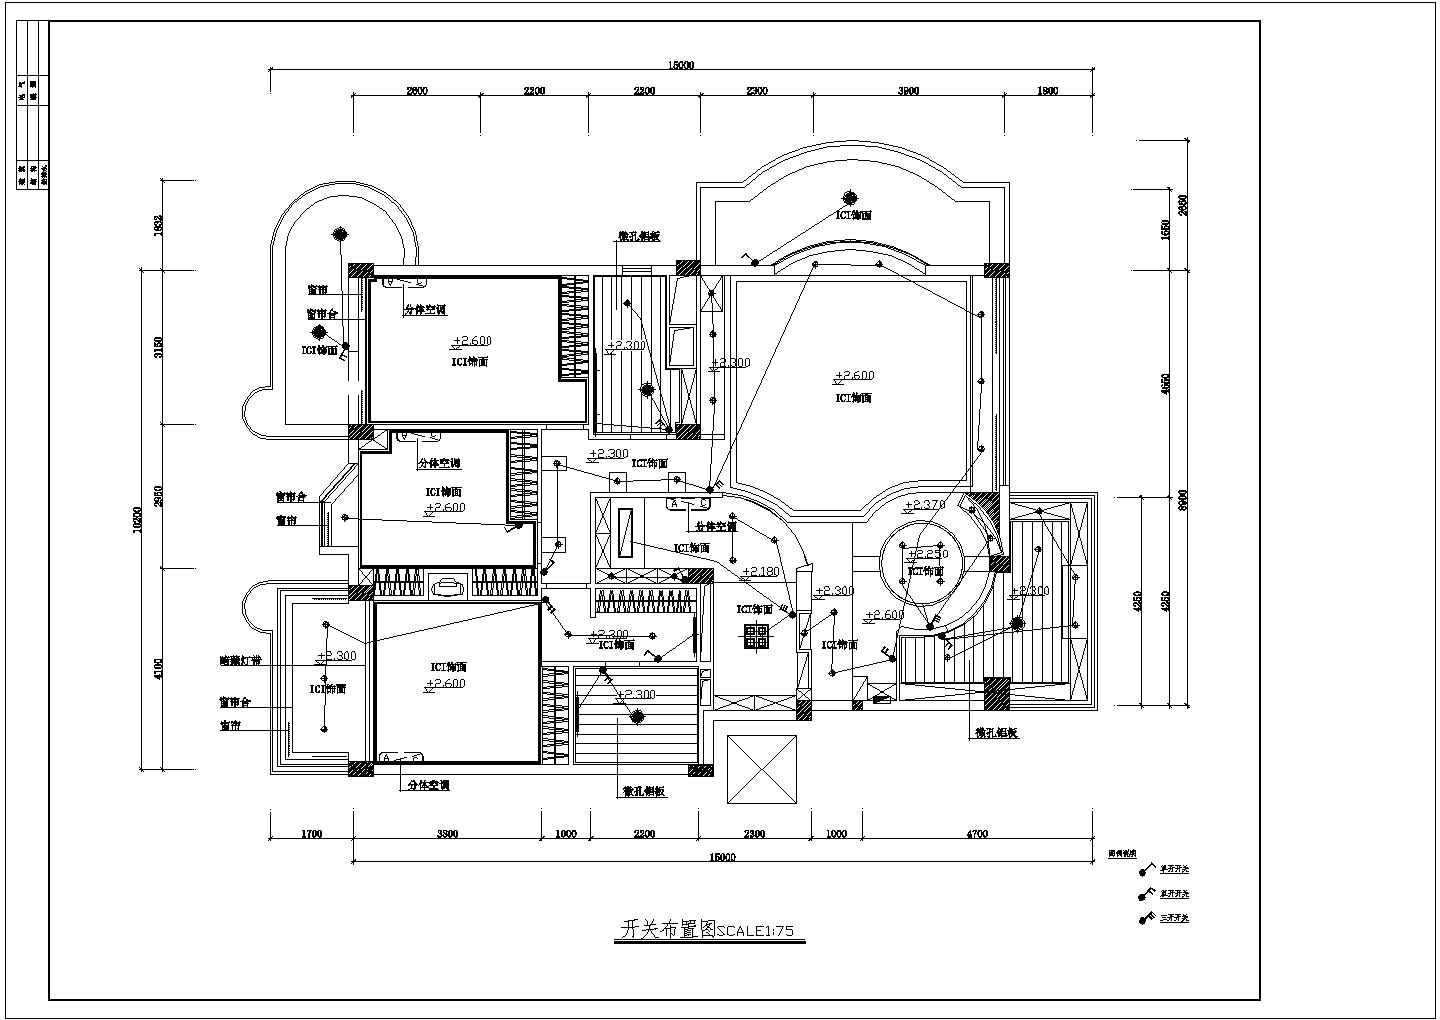 大连市某私人高端住宅全套装修设计CAD图纸